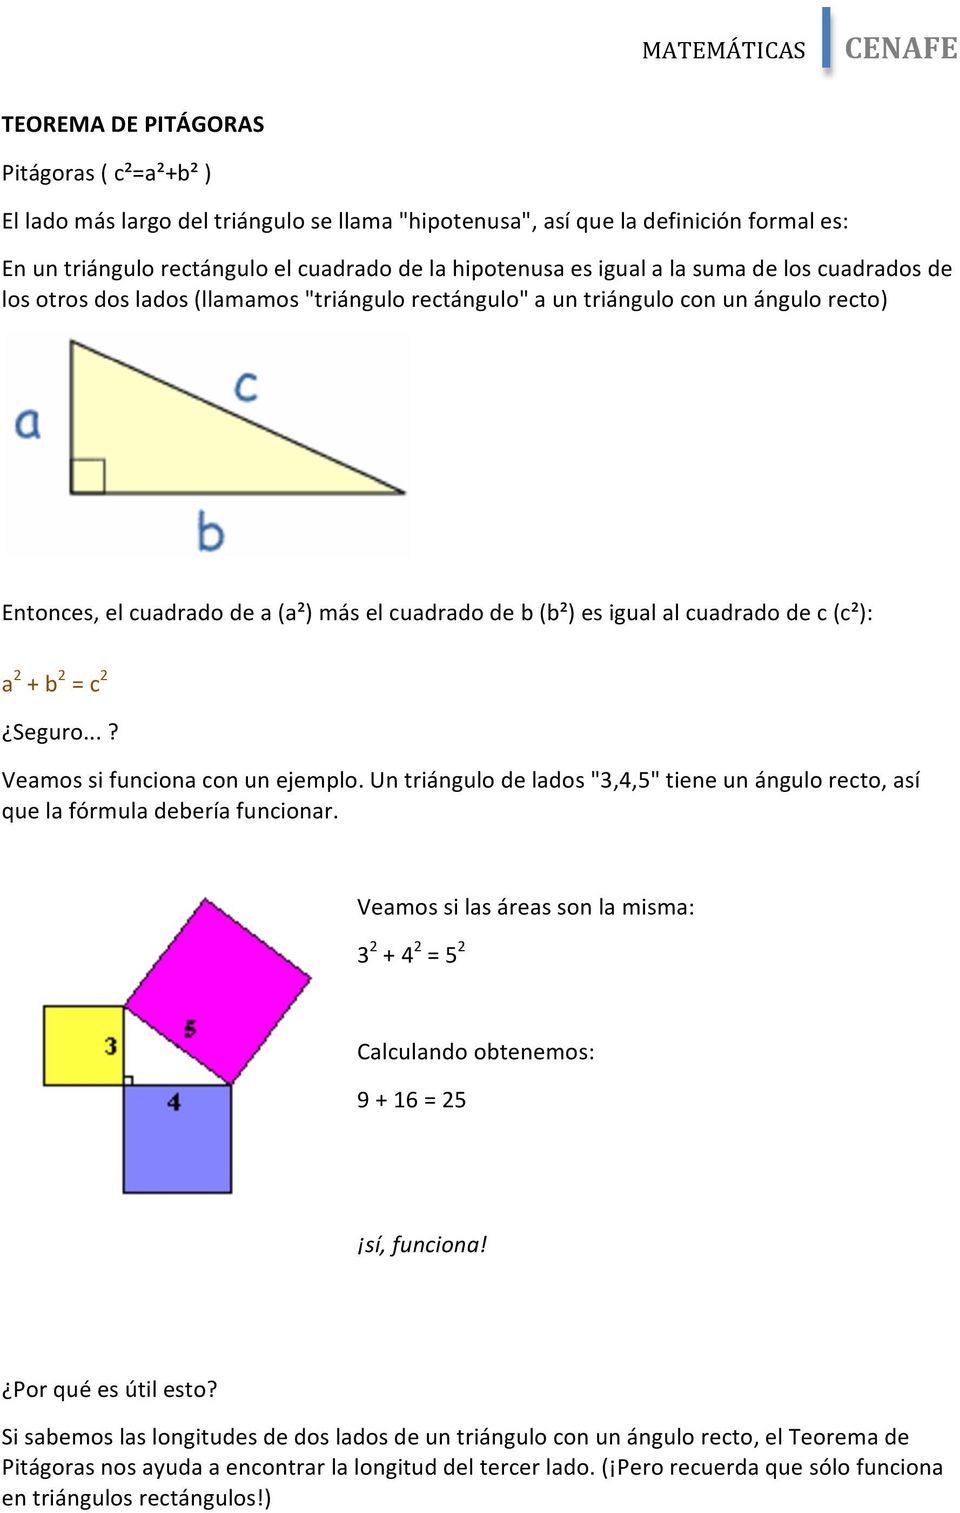 c (c²): a 2 + b 2 = c 2 Seguro...? Veamos si funciona con un ejemplo. Un triángulo de lados "3,4,5" tiene un ángulo recto, así que la fórmula debería funcionar.